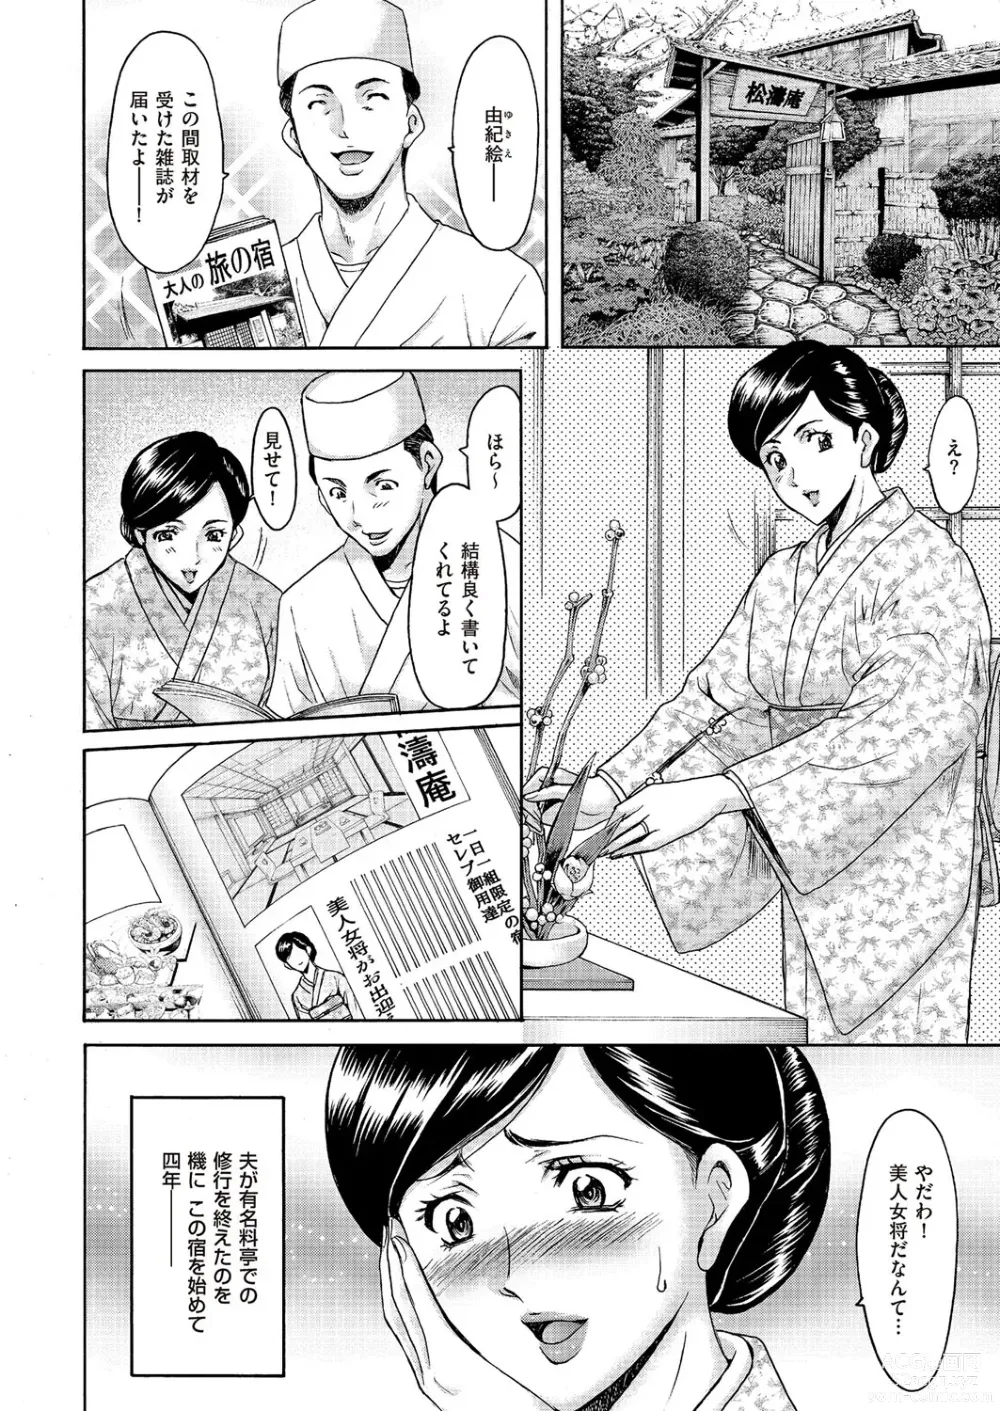 Page 3 of manga Kouin okasareta huuhu no kizuna Ch.1-3